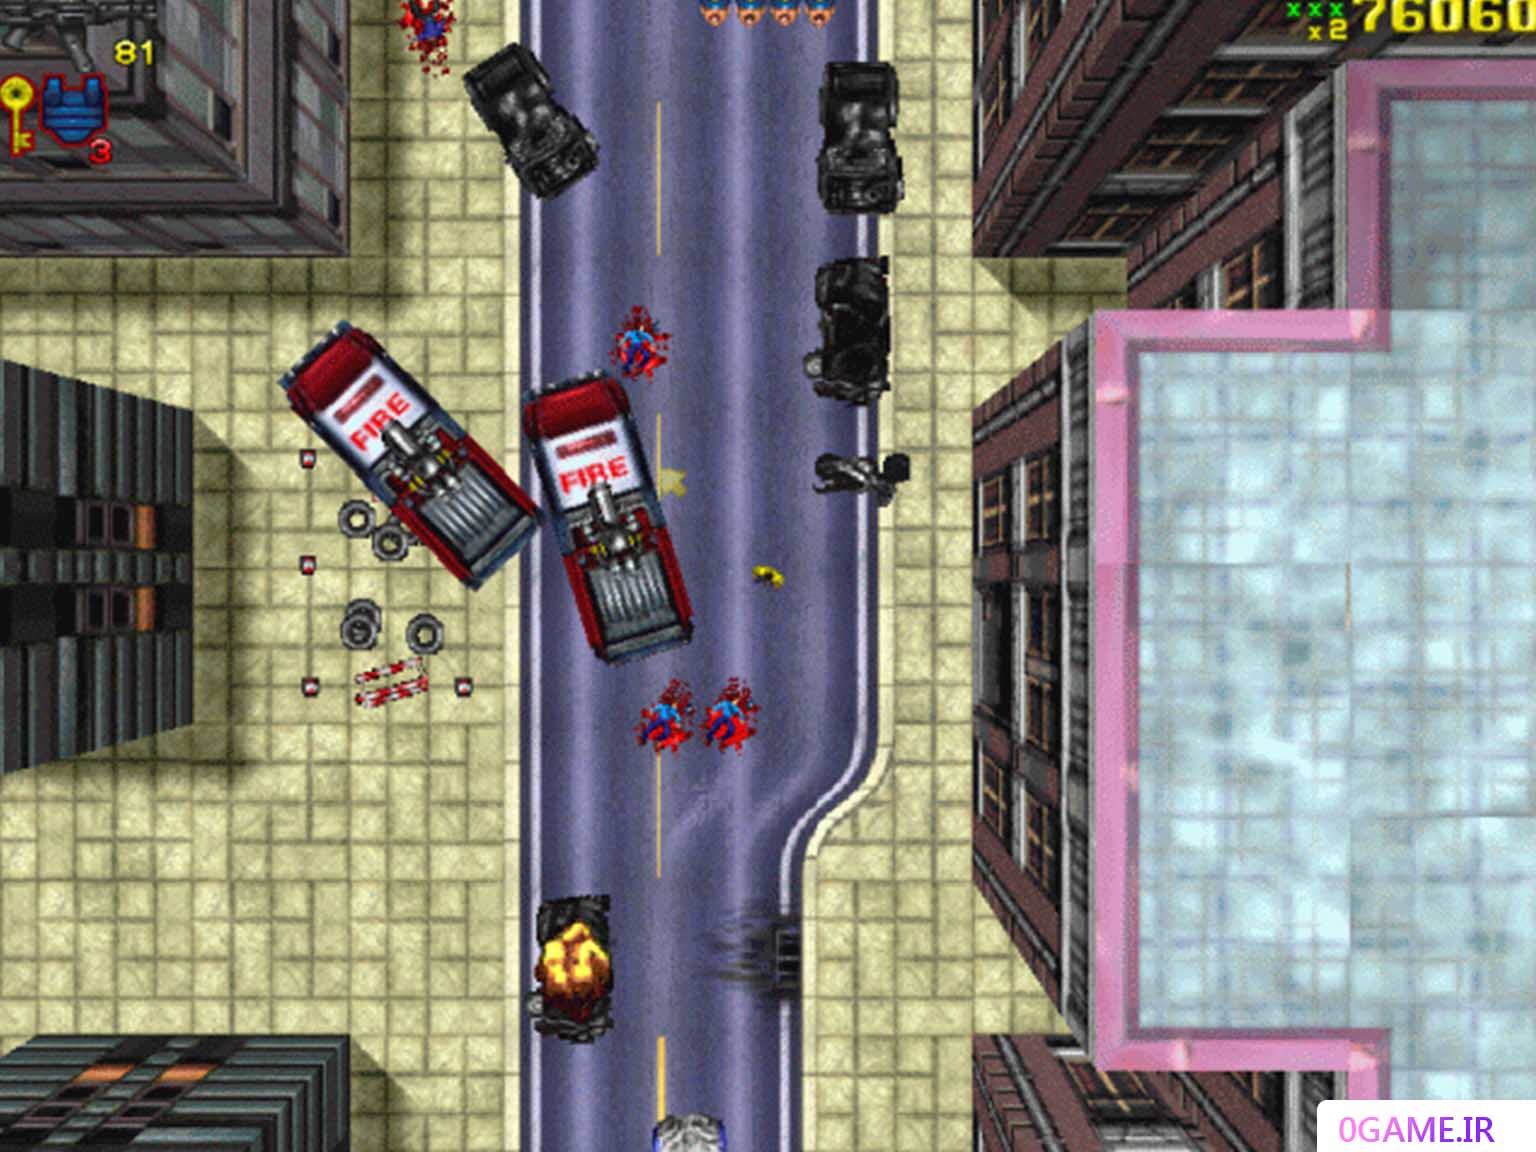 دانلود (Grand Theft Auto) نسخه کامل برای کامپیوتر